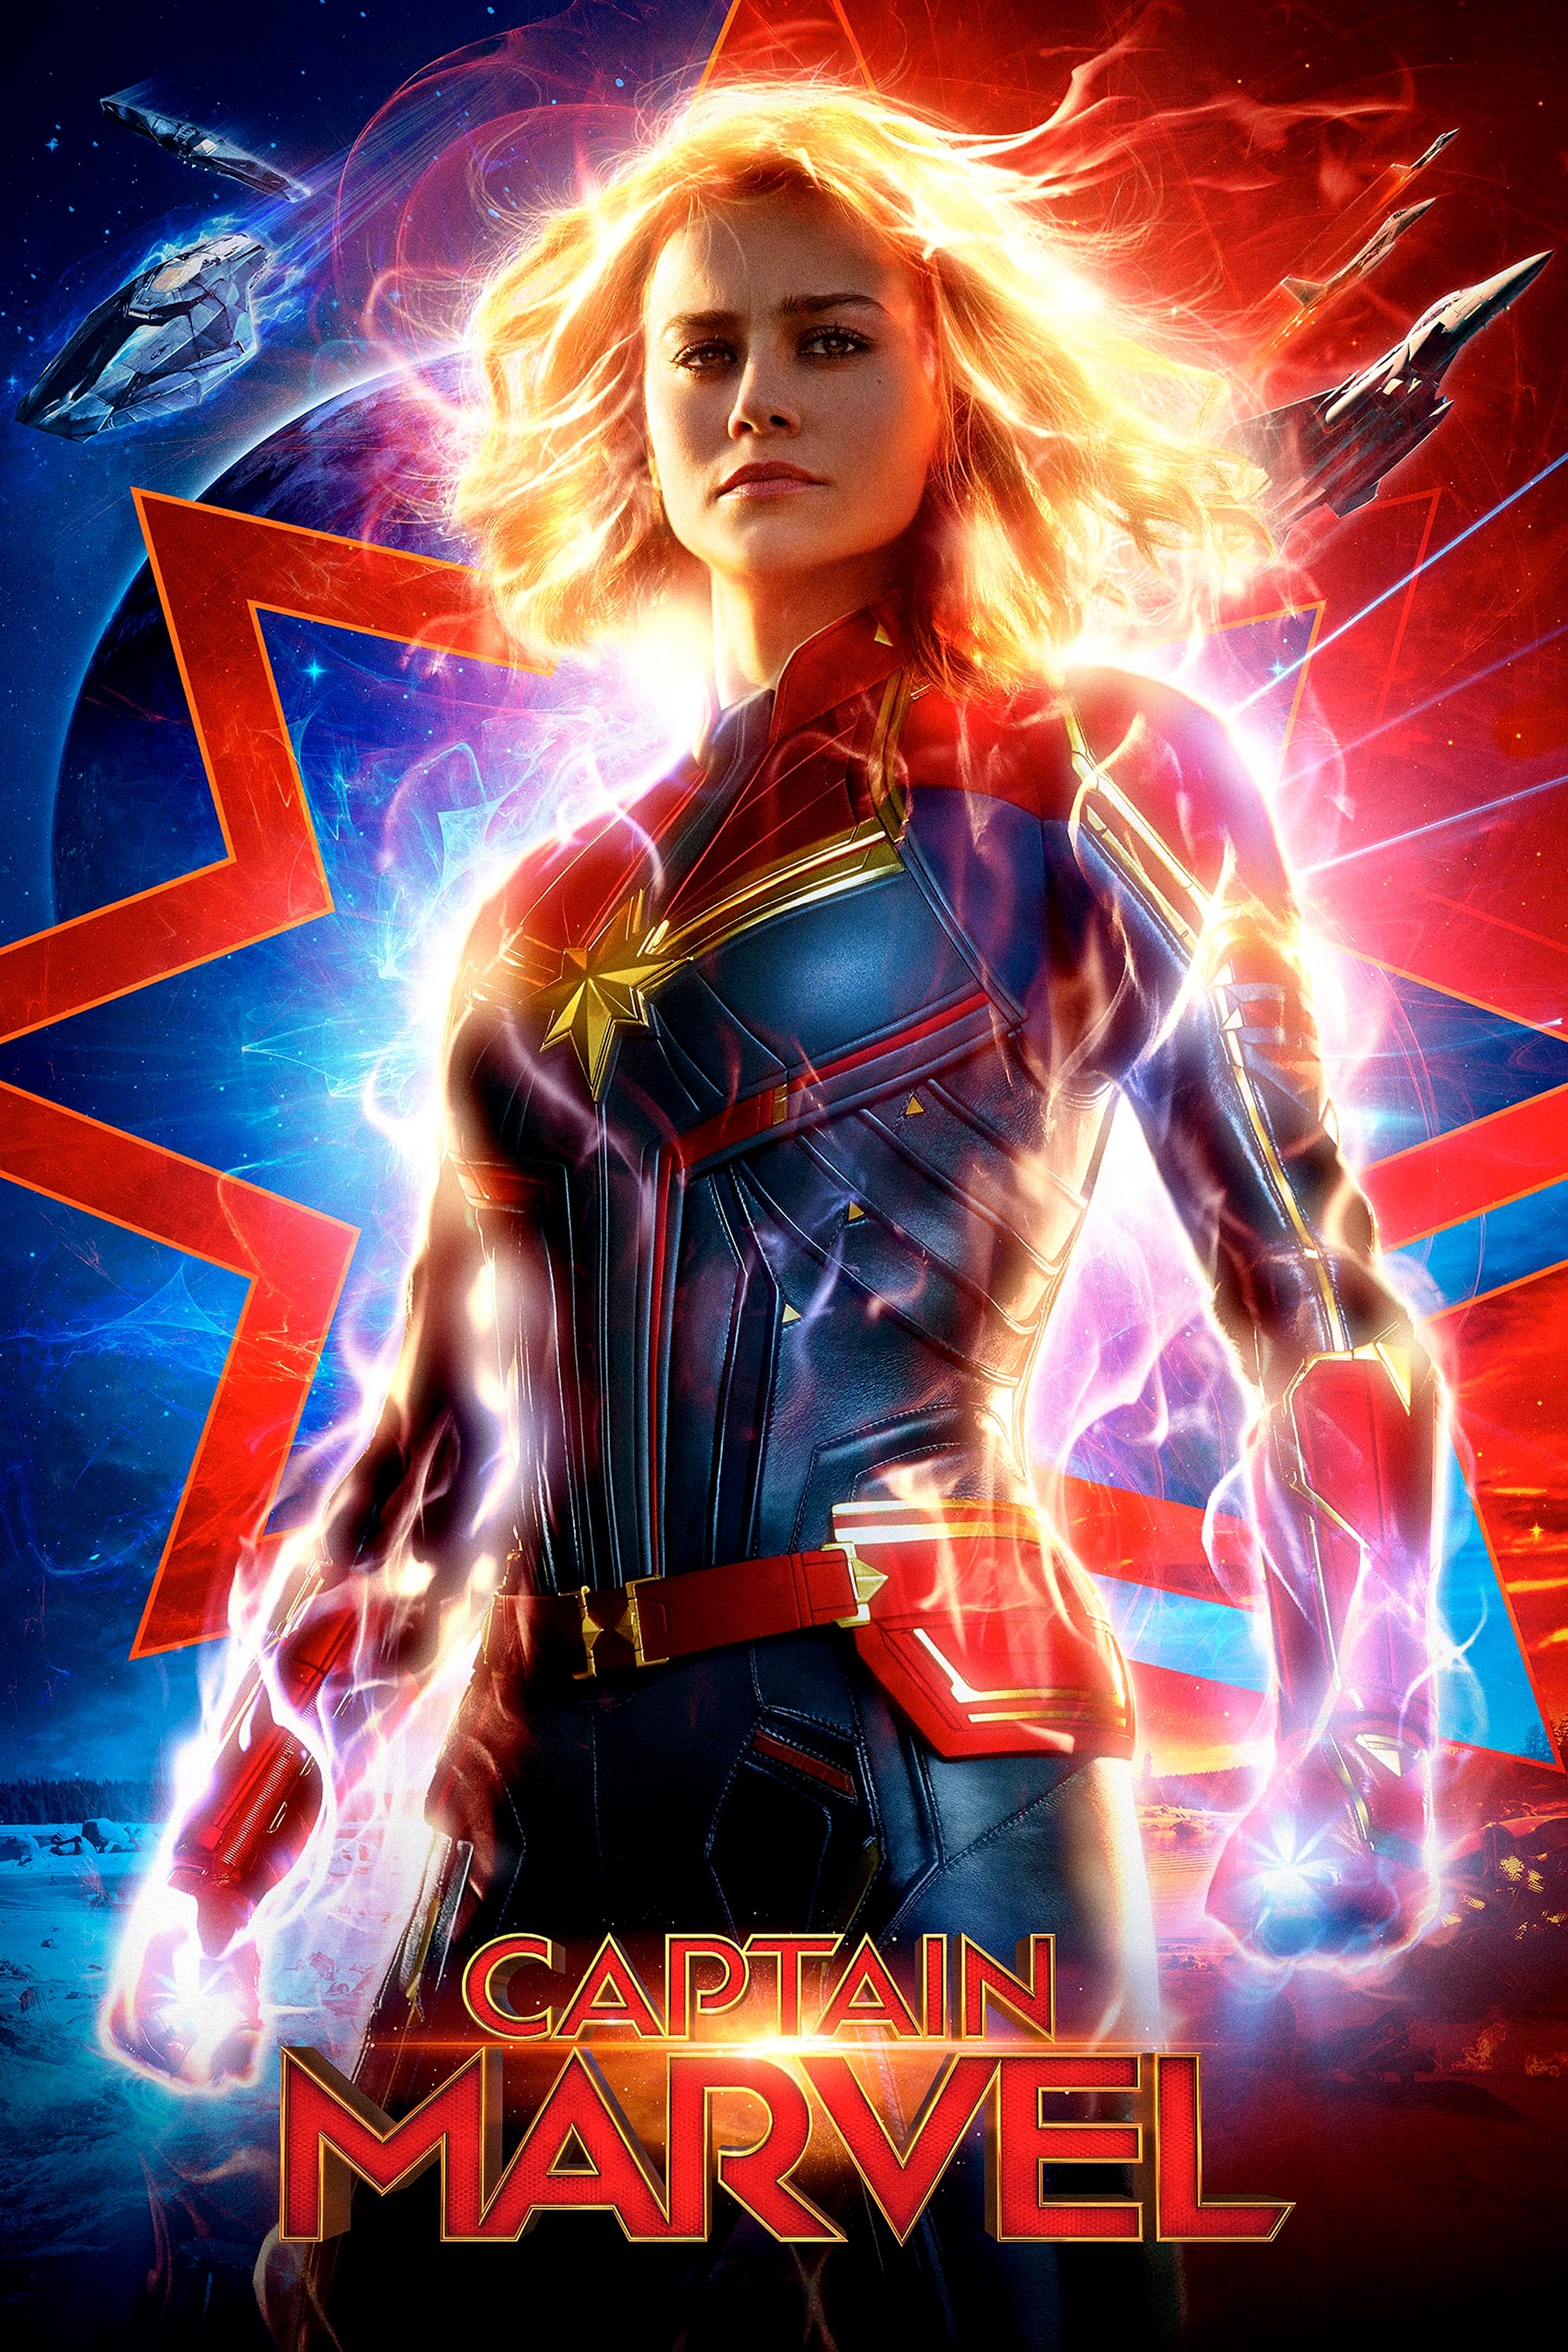 Plakat von "Captain Marvel"